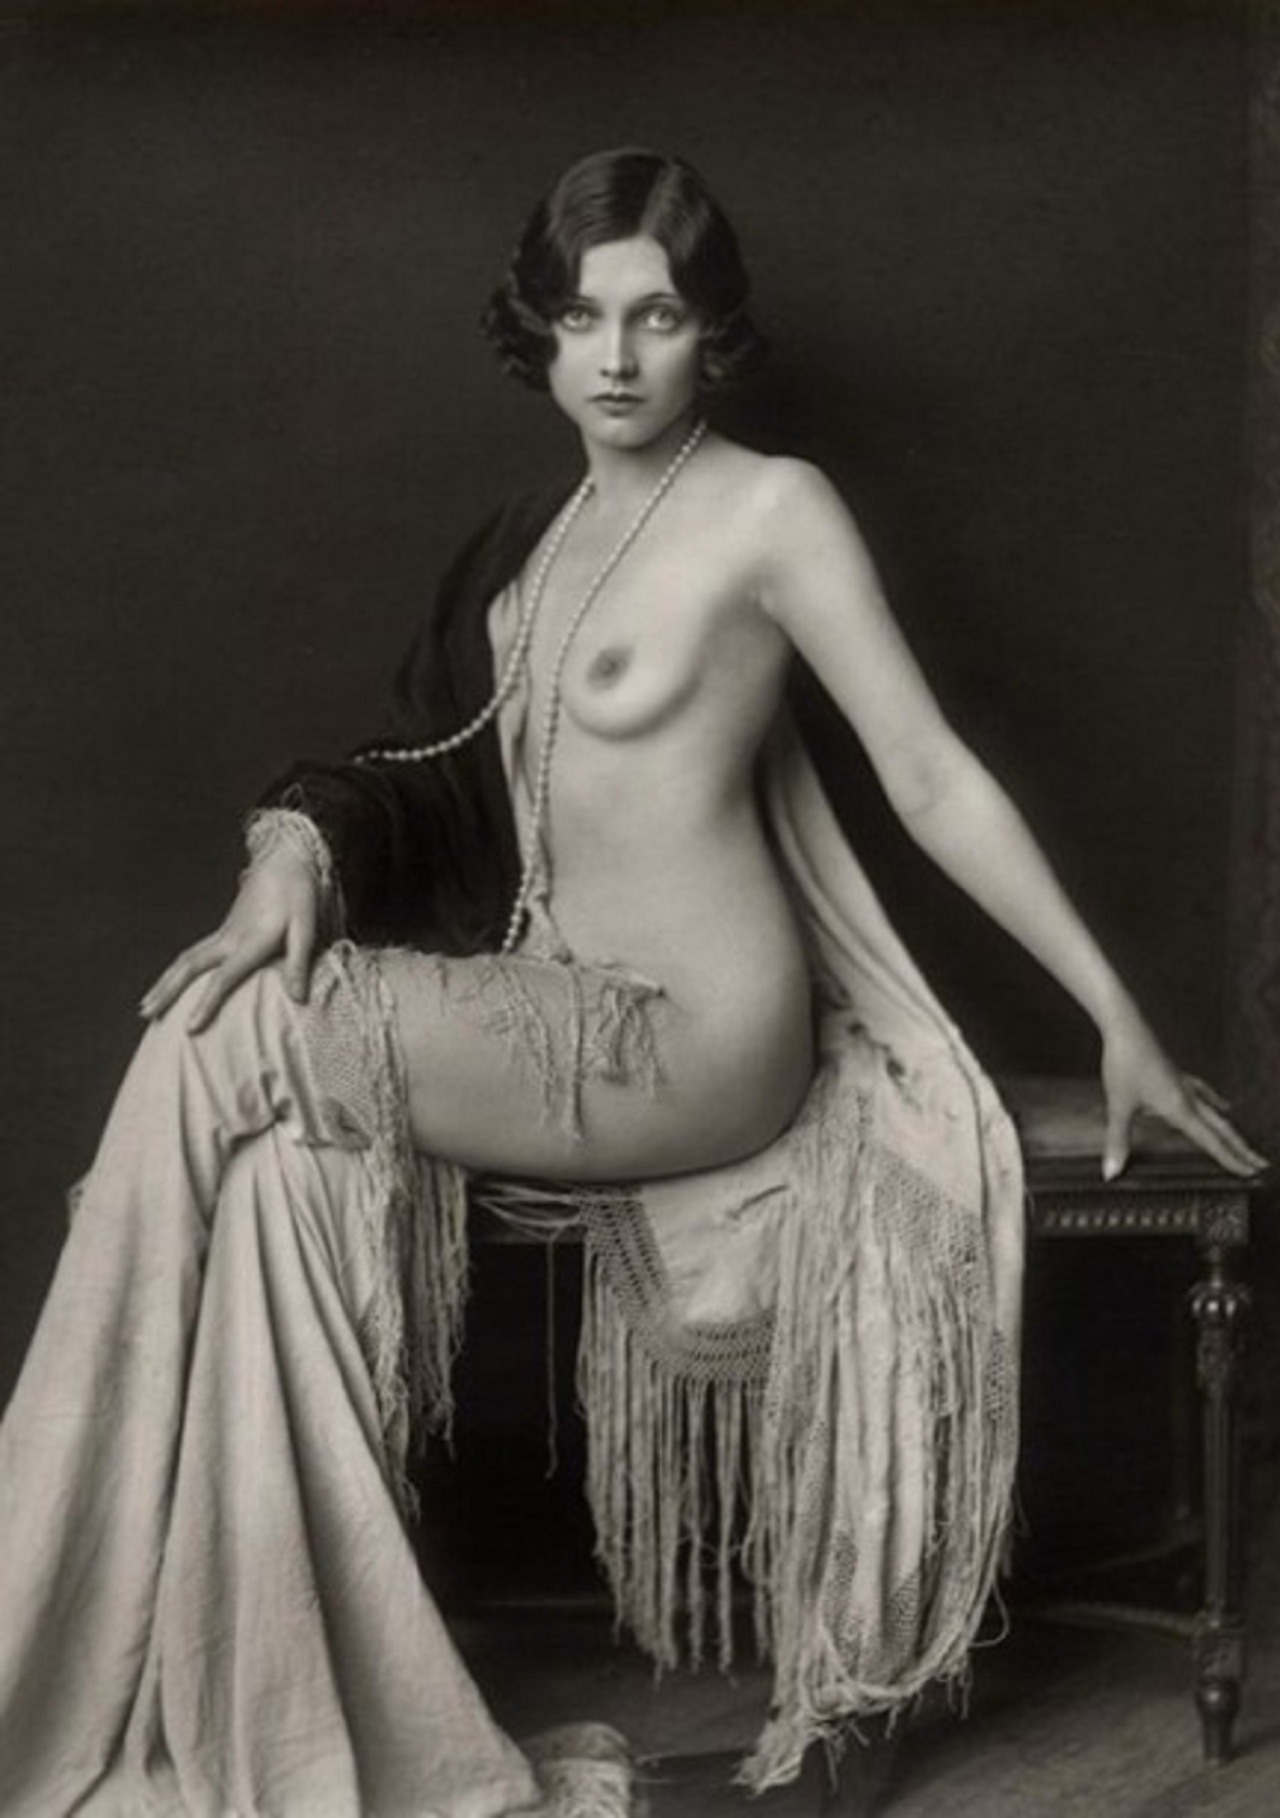 Casually erotica 1920s nudes vintage you mean? agree â€” Porn 18+.